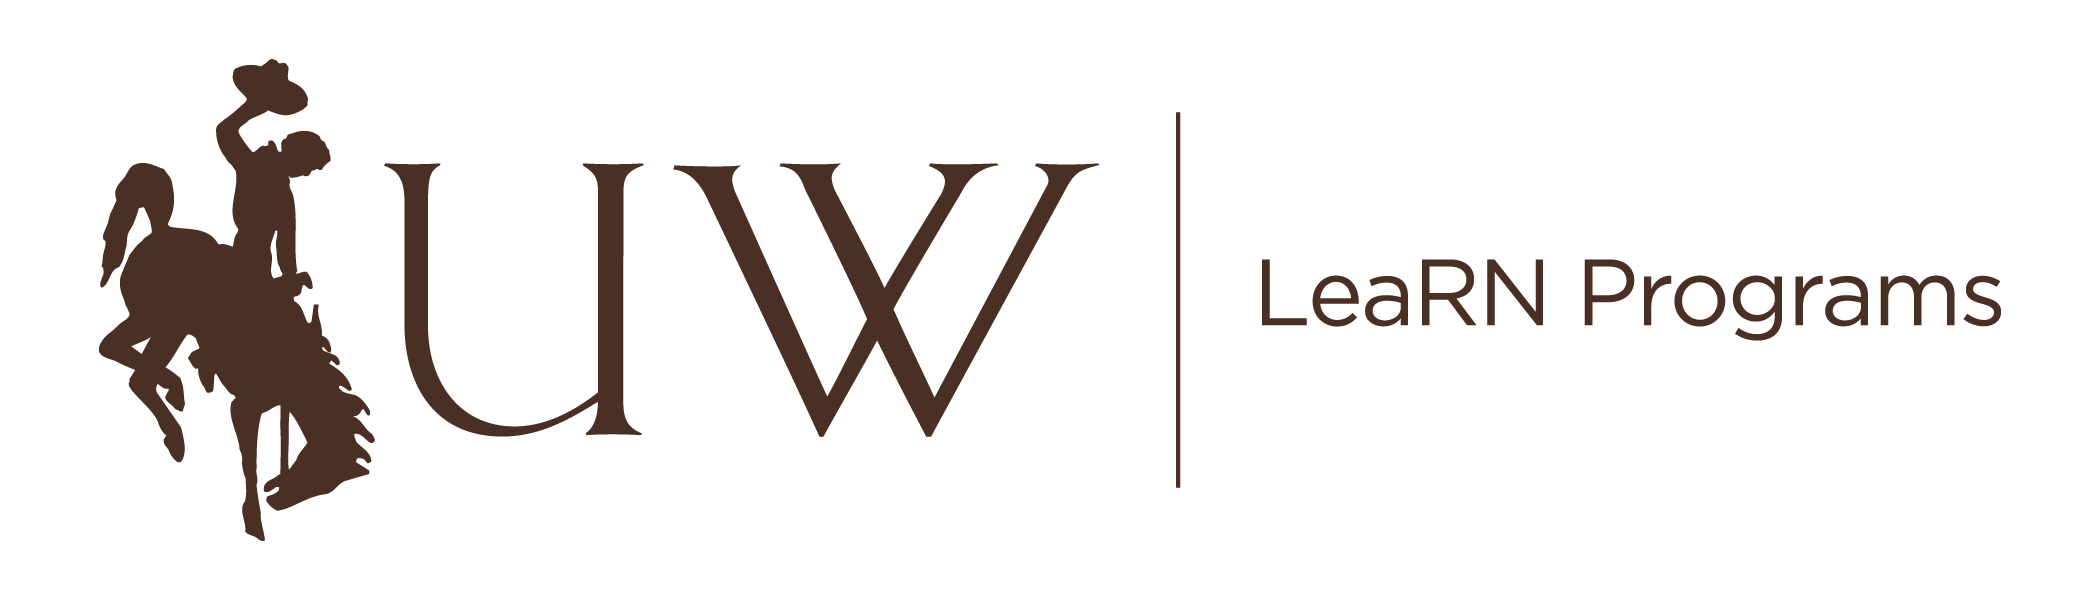 LeaRN logo